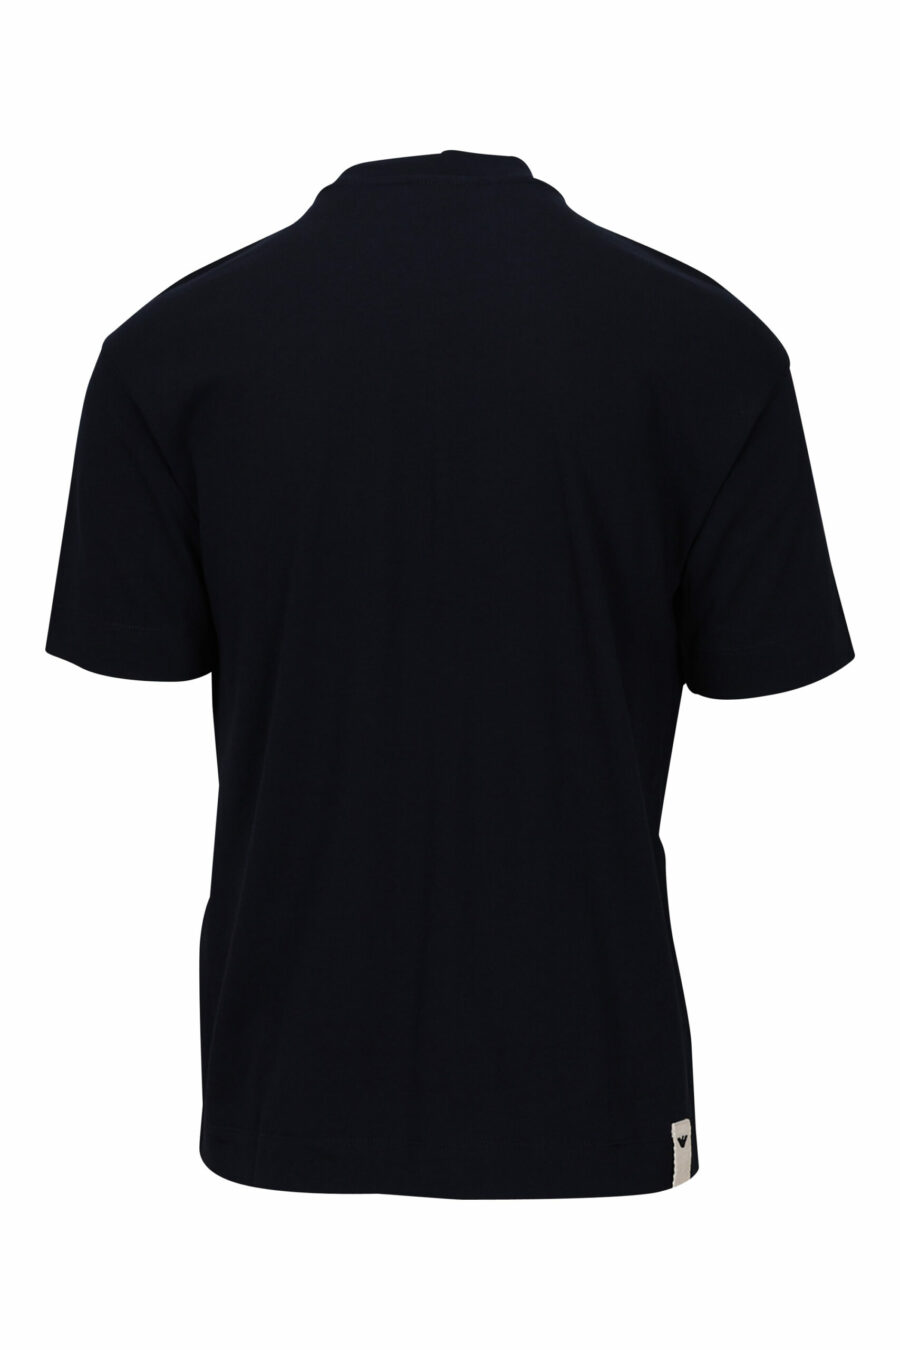 Camiseta azul marino con logo centrado - 8057767459796 1 scaled